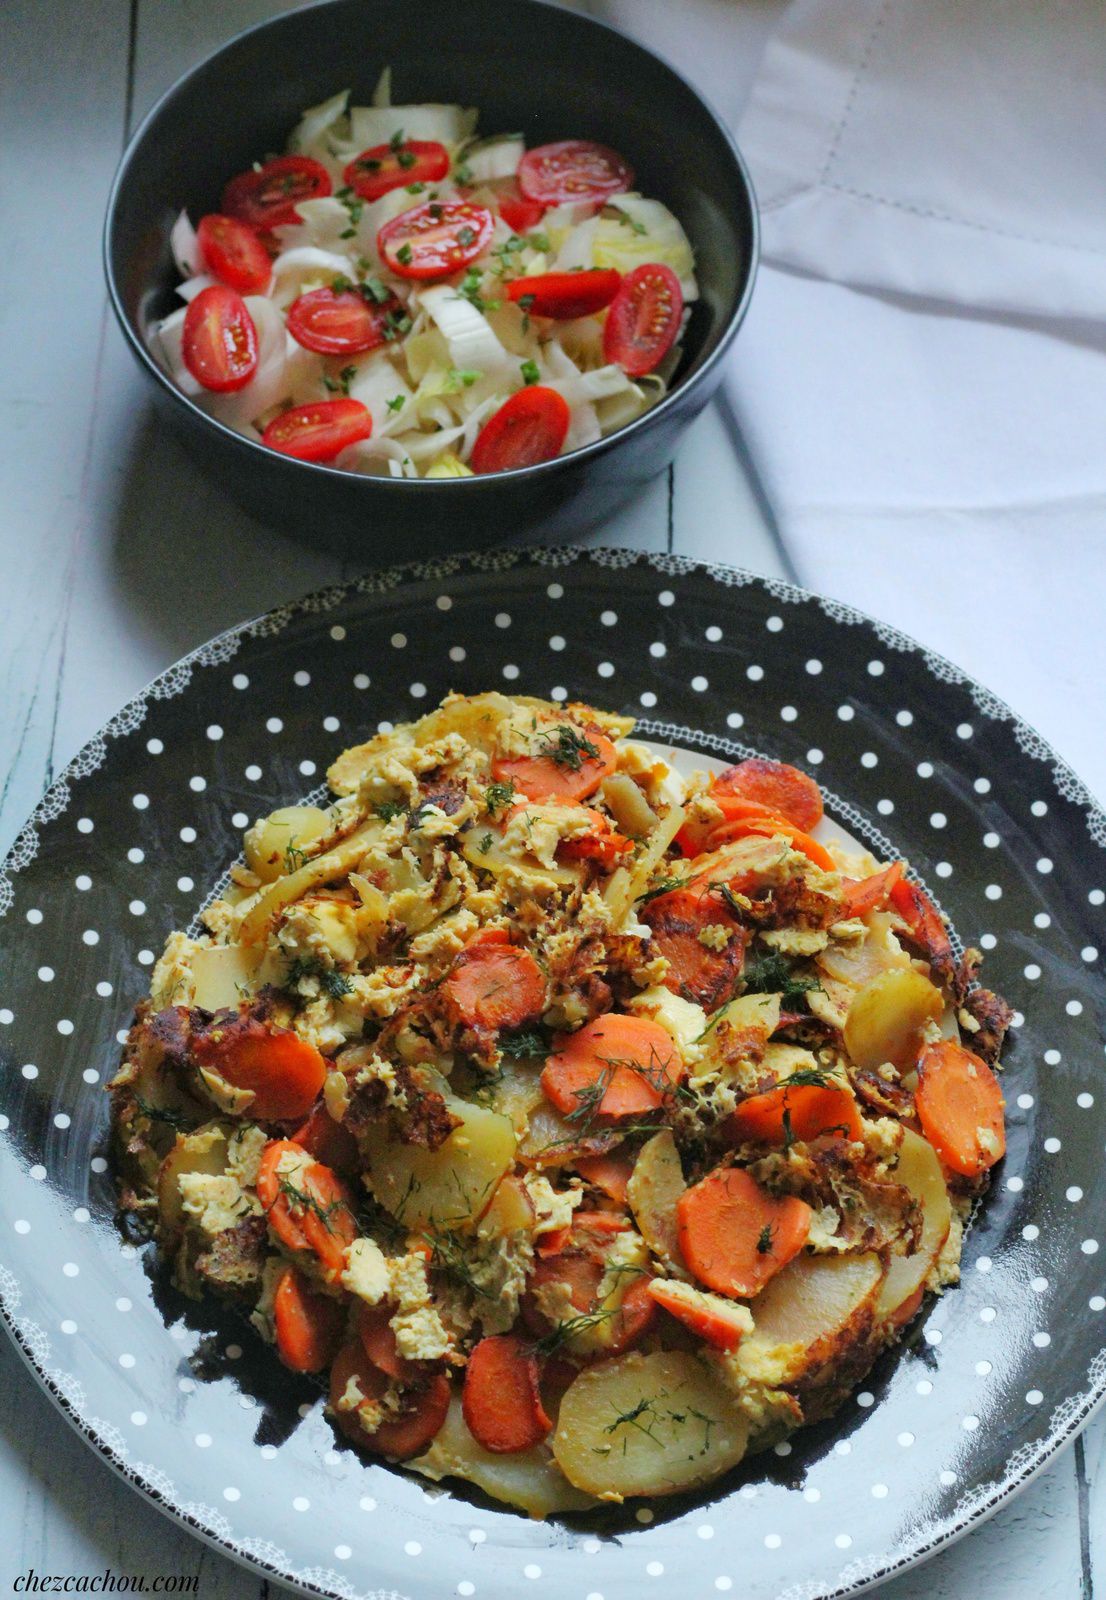 Oeufs brouillés aux pommes de terre, carottes et féta